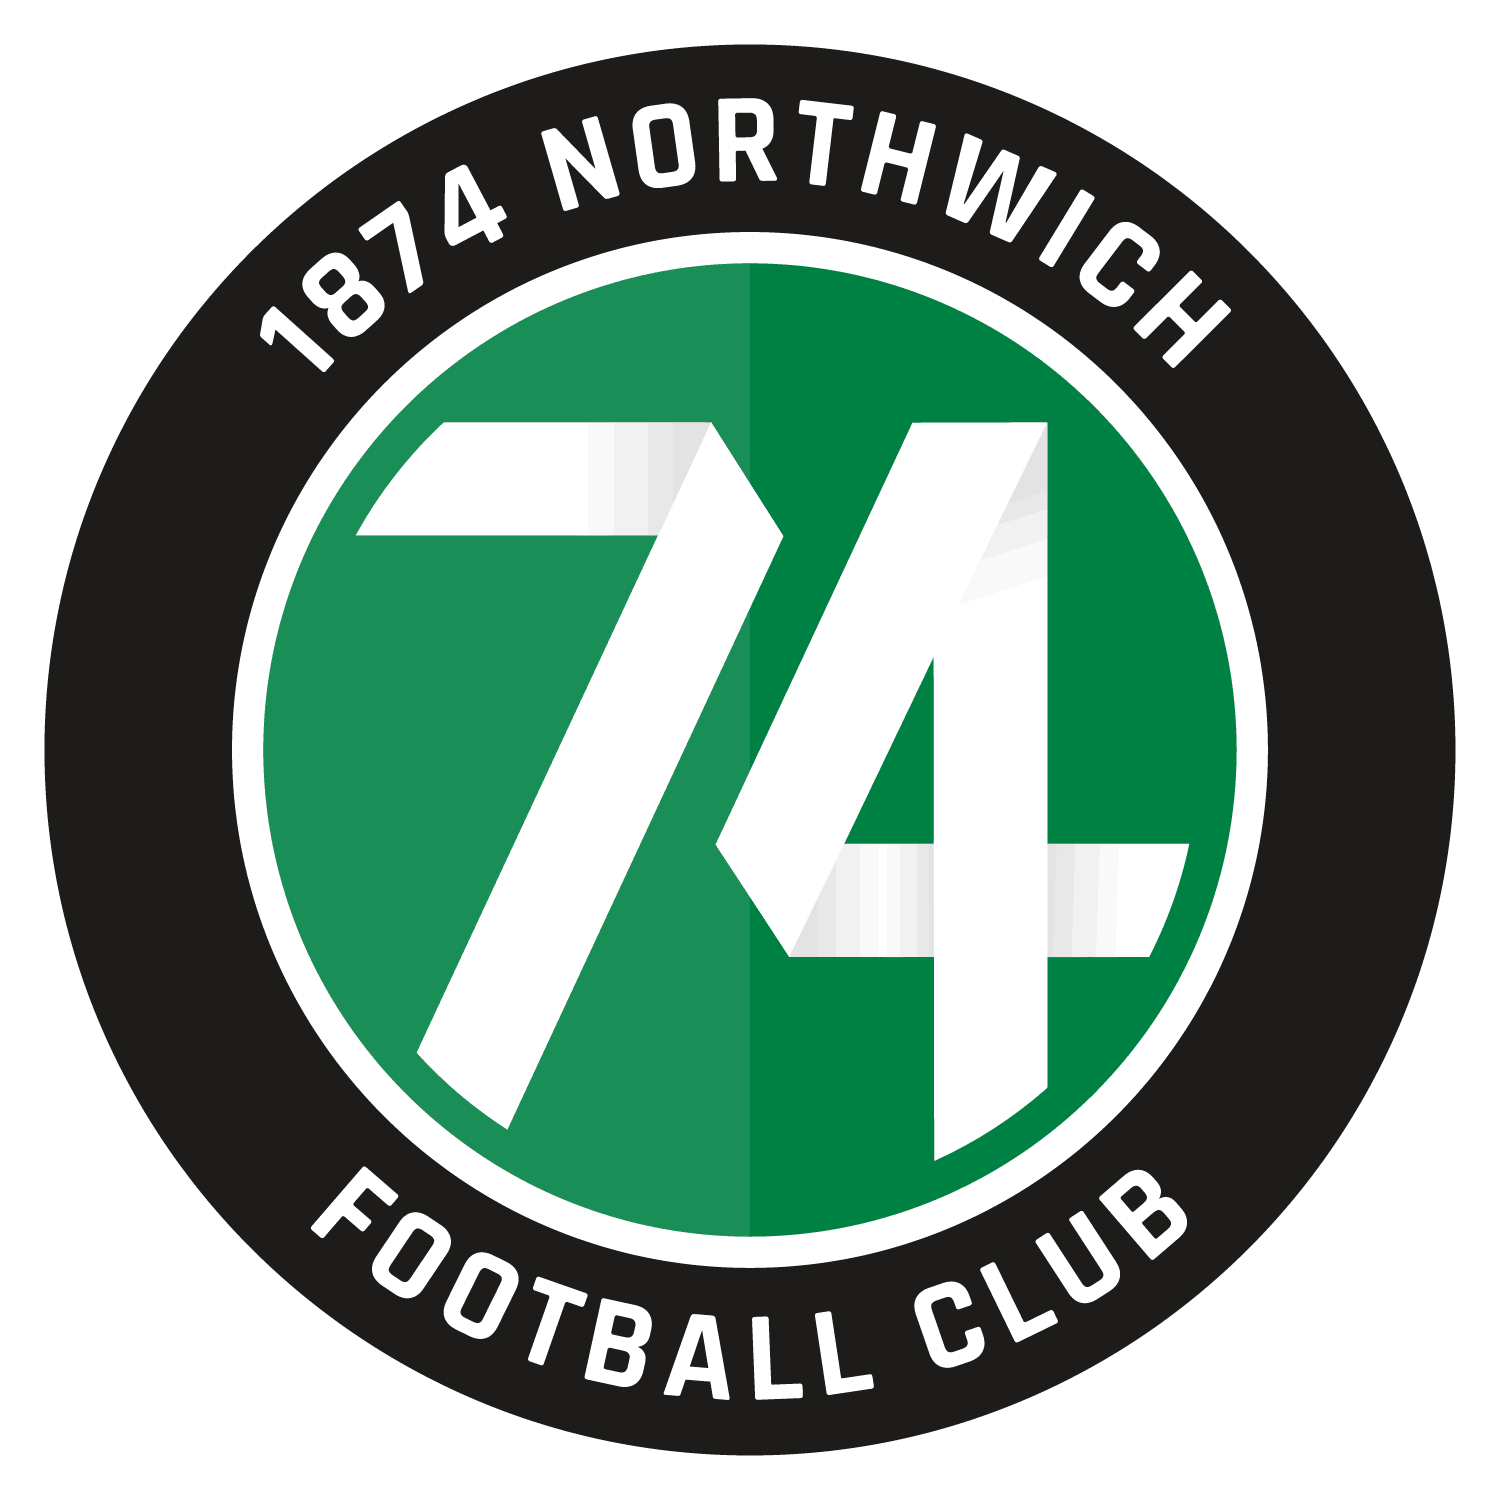 1874 Northwich